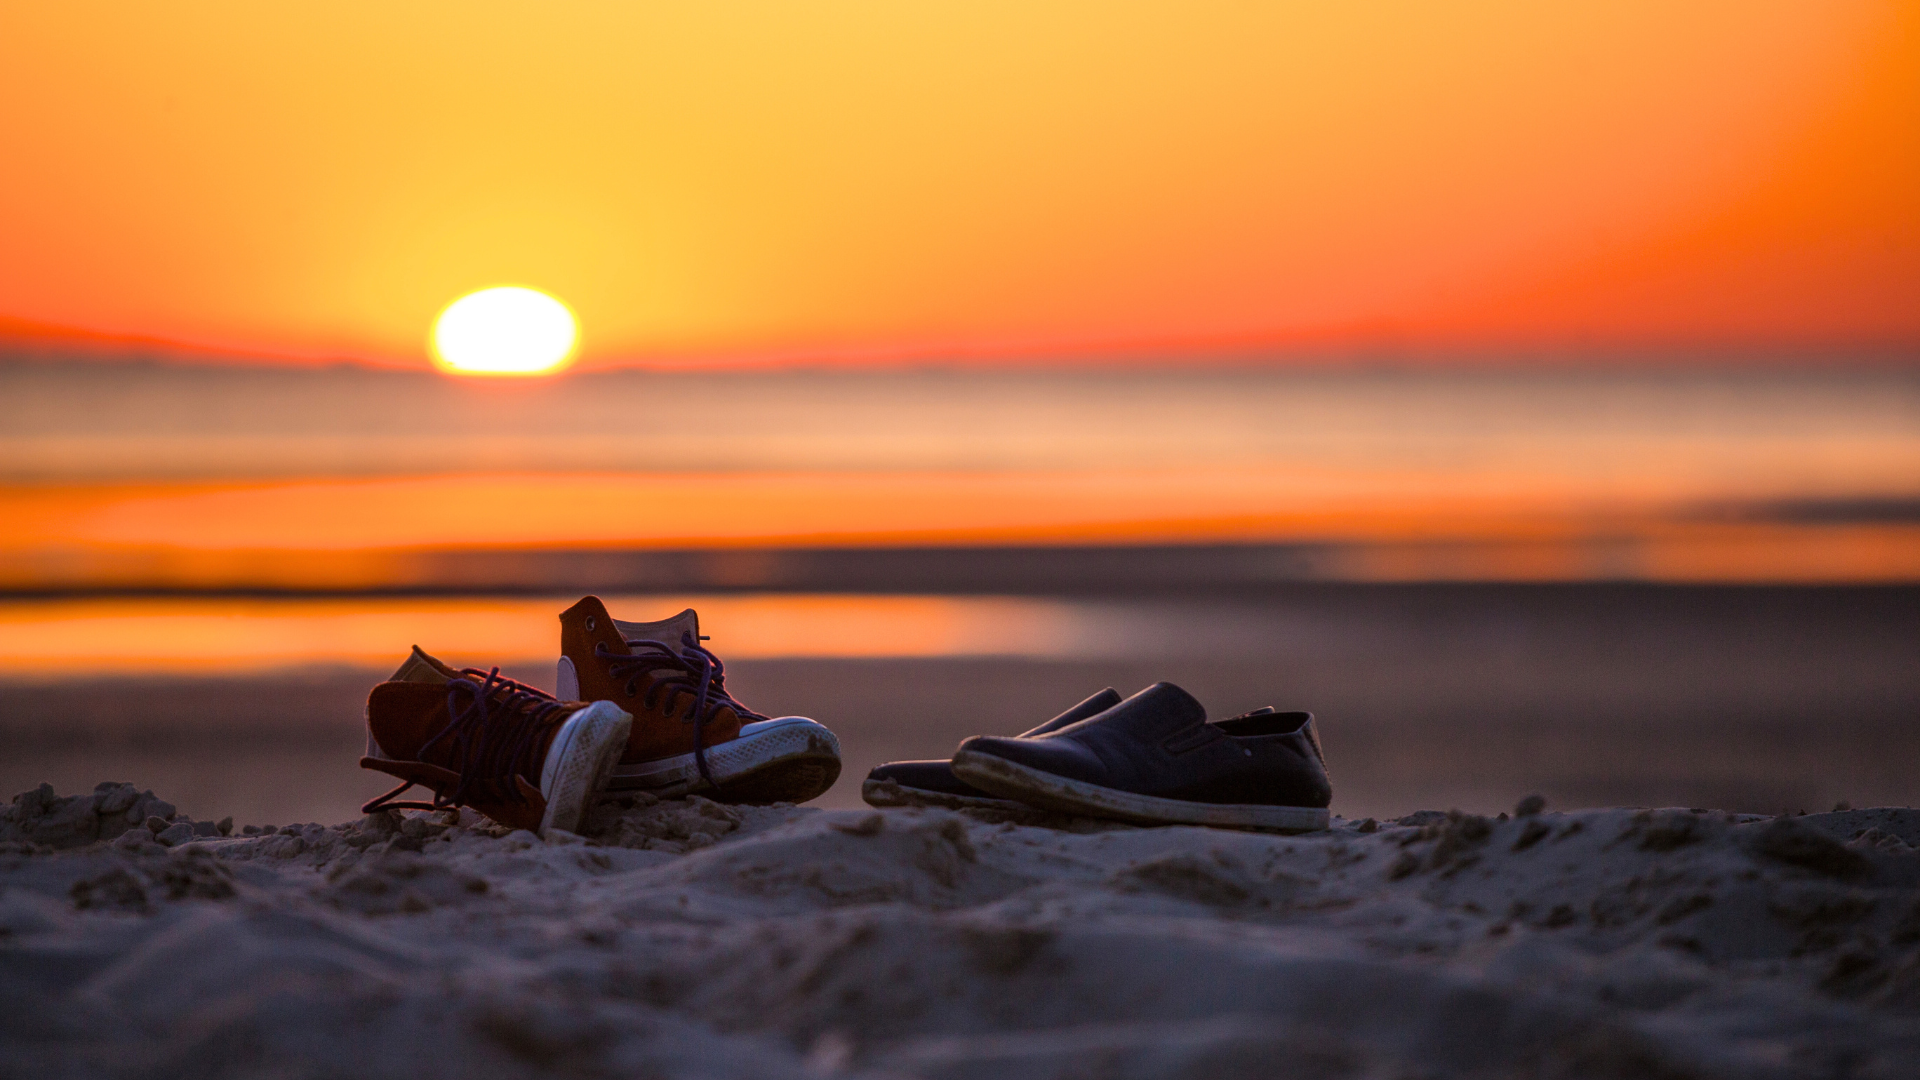 shoes at the seashore